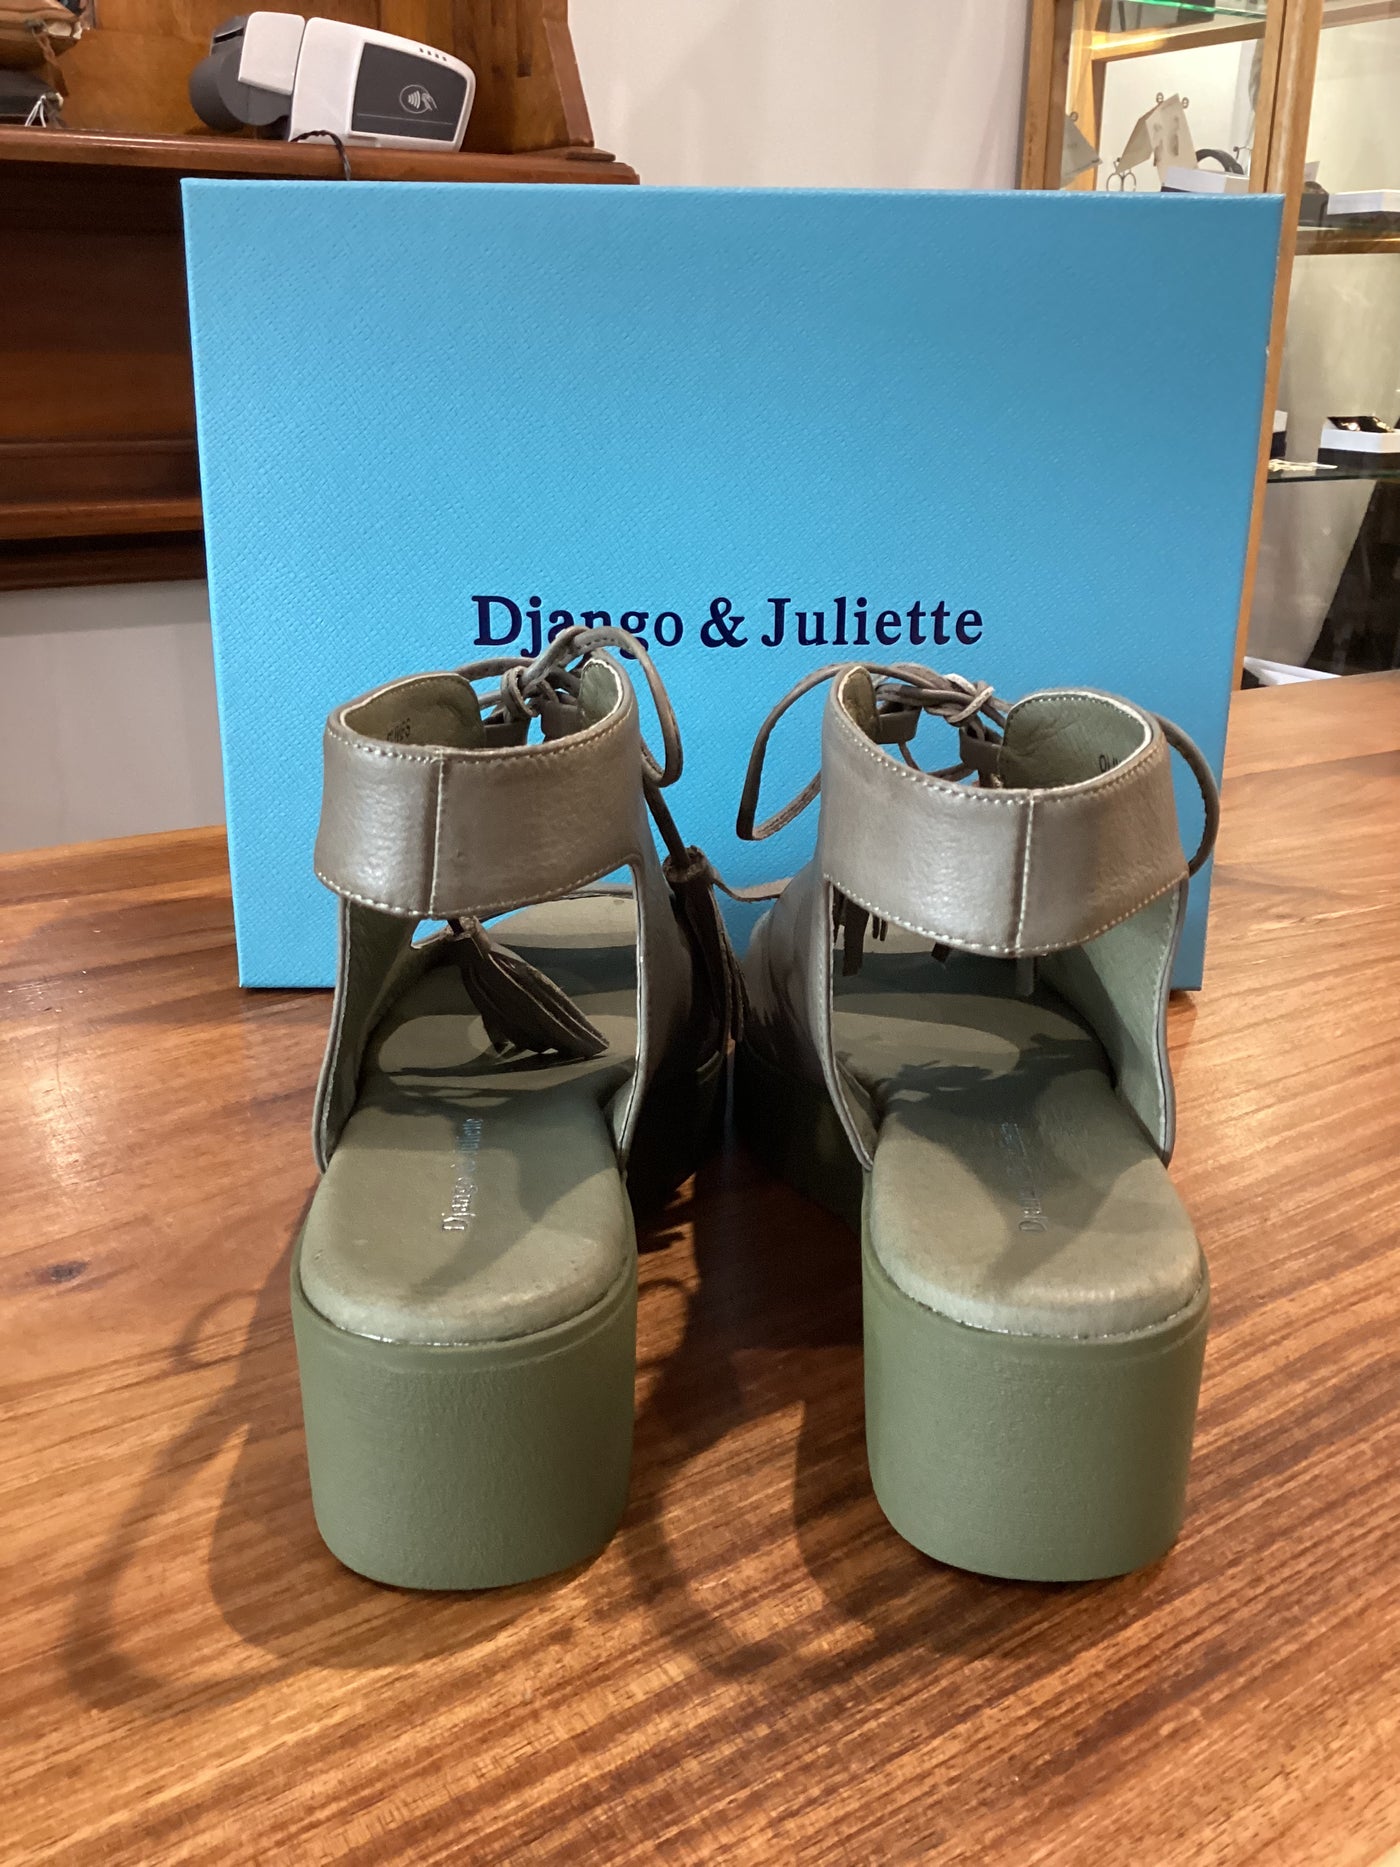 Django and Juliette - Olives Leather Sandals Olive